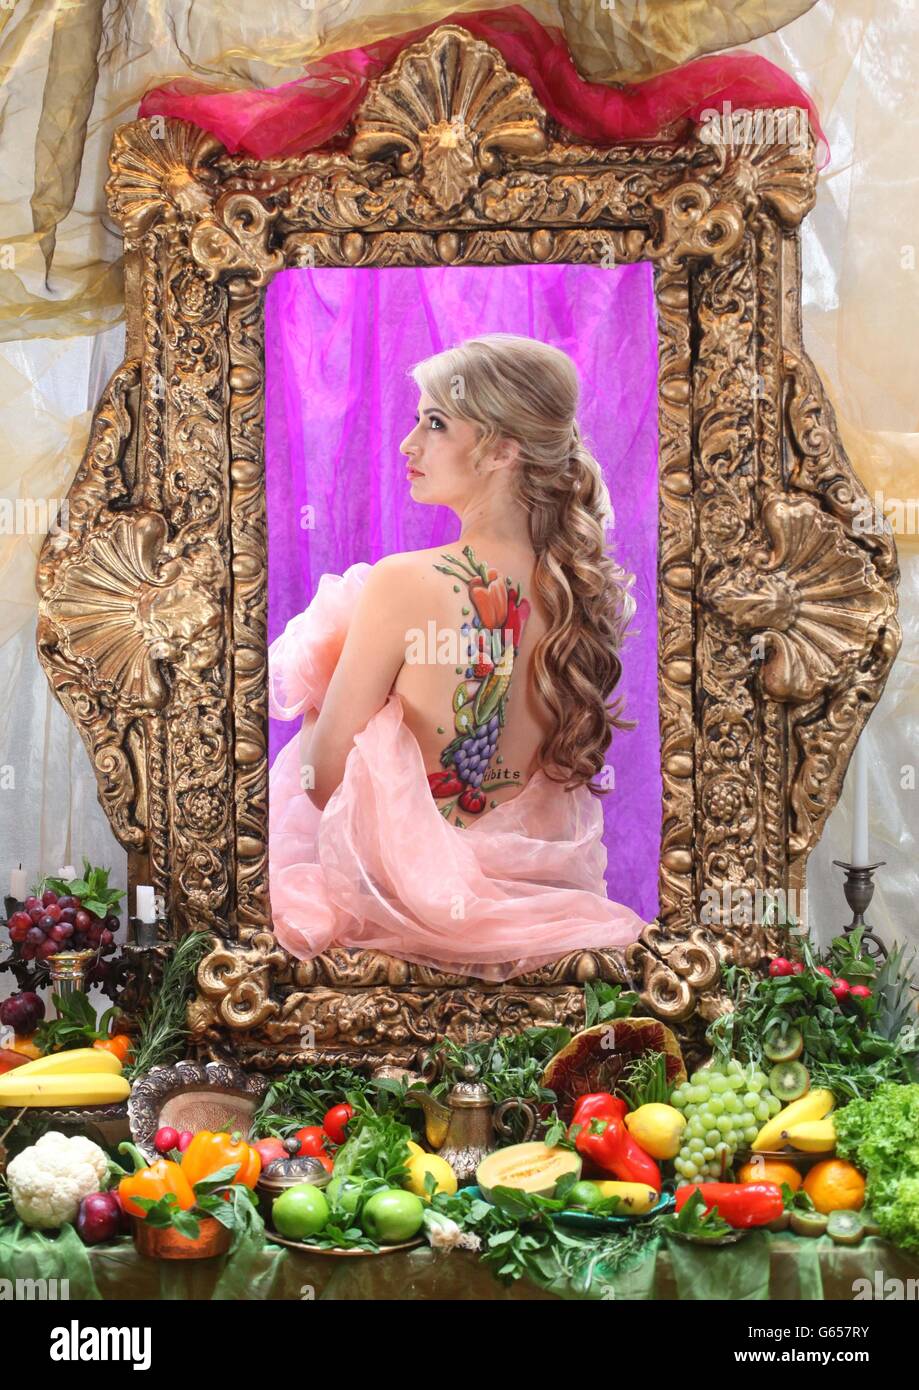 Chantelle Houghton wird in einem tableau von Greg Stone zur Renaissance-Schönheit für den Tag, um die National Vegetarian Week im tibits vegetarischen Restaurant in der Heddon Street im Zentrum von London zu feiern. Stockfoto